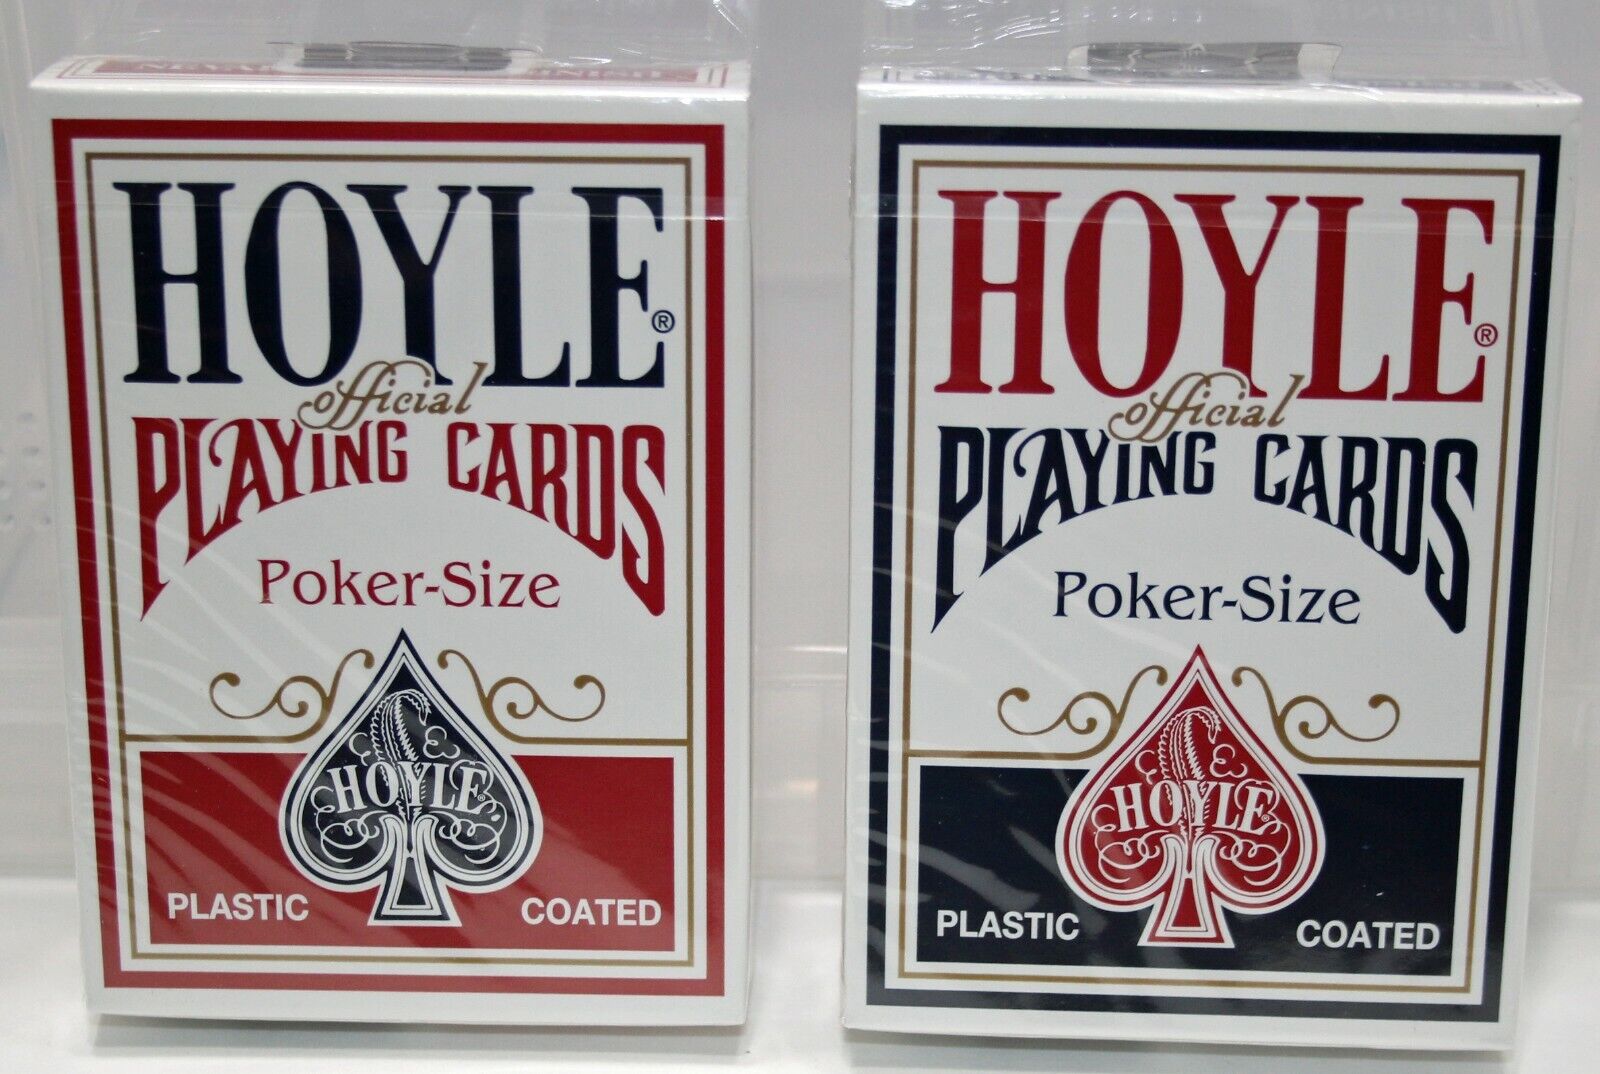  HOYLE SHELL BACK  Plastic Coated Playing Cards 2x 1 Red Finish 1 Blue Finish 